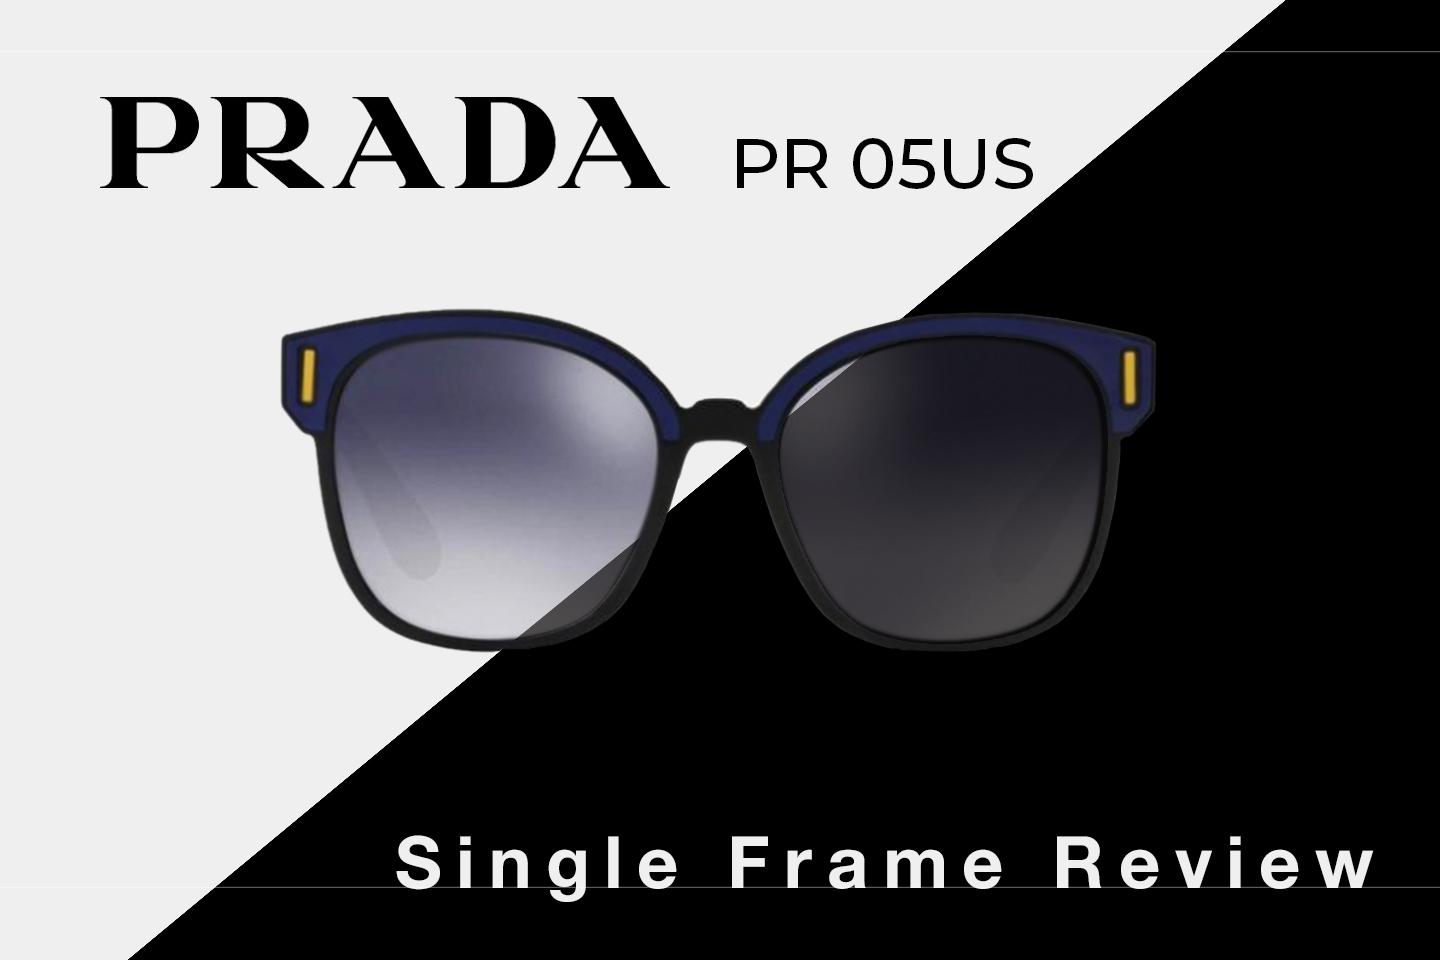 Prada PR 05US Sunglasses Review | Prada Women's Square Sunglasses